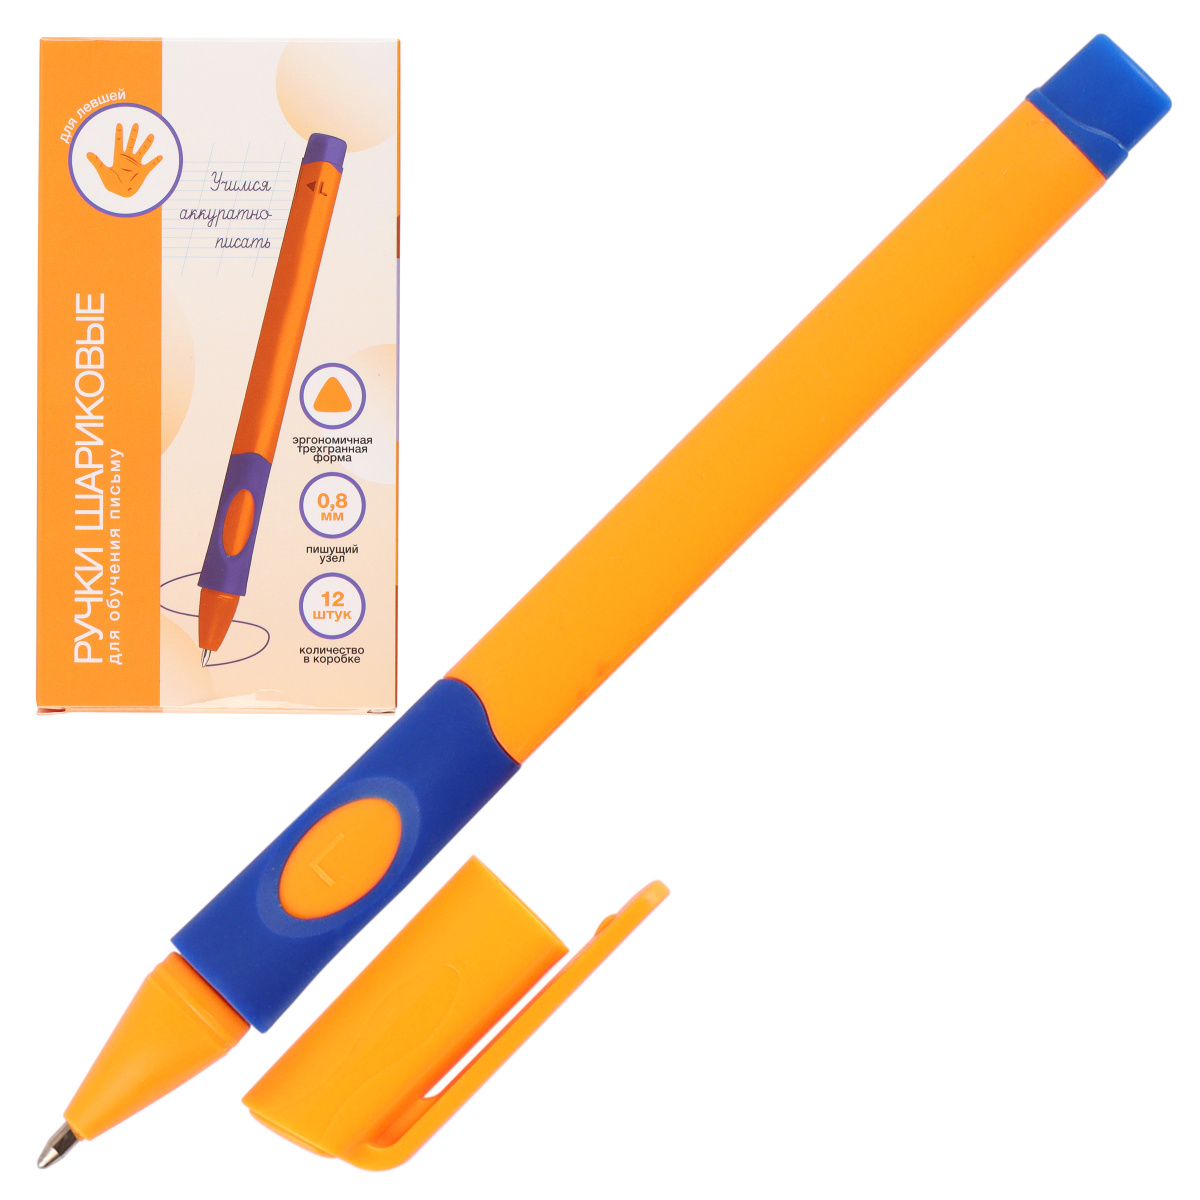 Ручка шариковая 0,8мм трехгранная с гриппом обучение письму для левшей 231619 синяя | Магазин канцтоваров и игрушек Львёнок